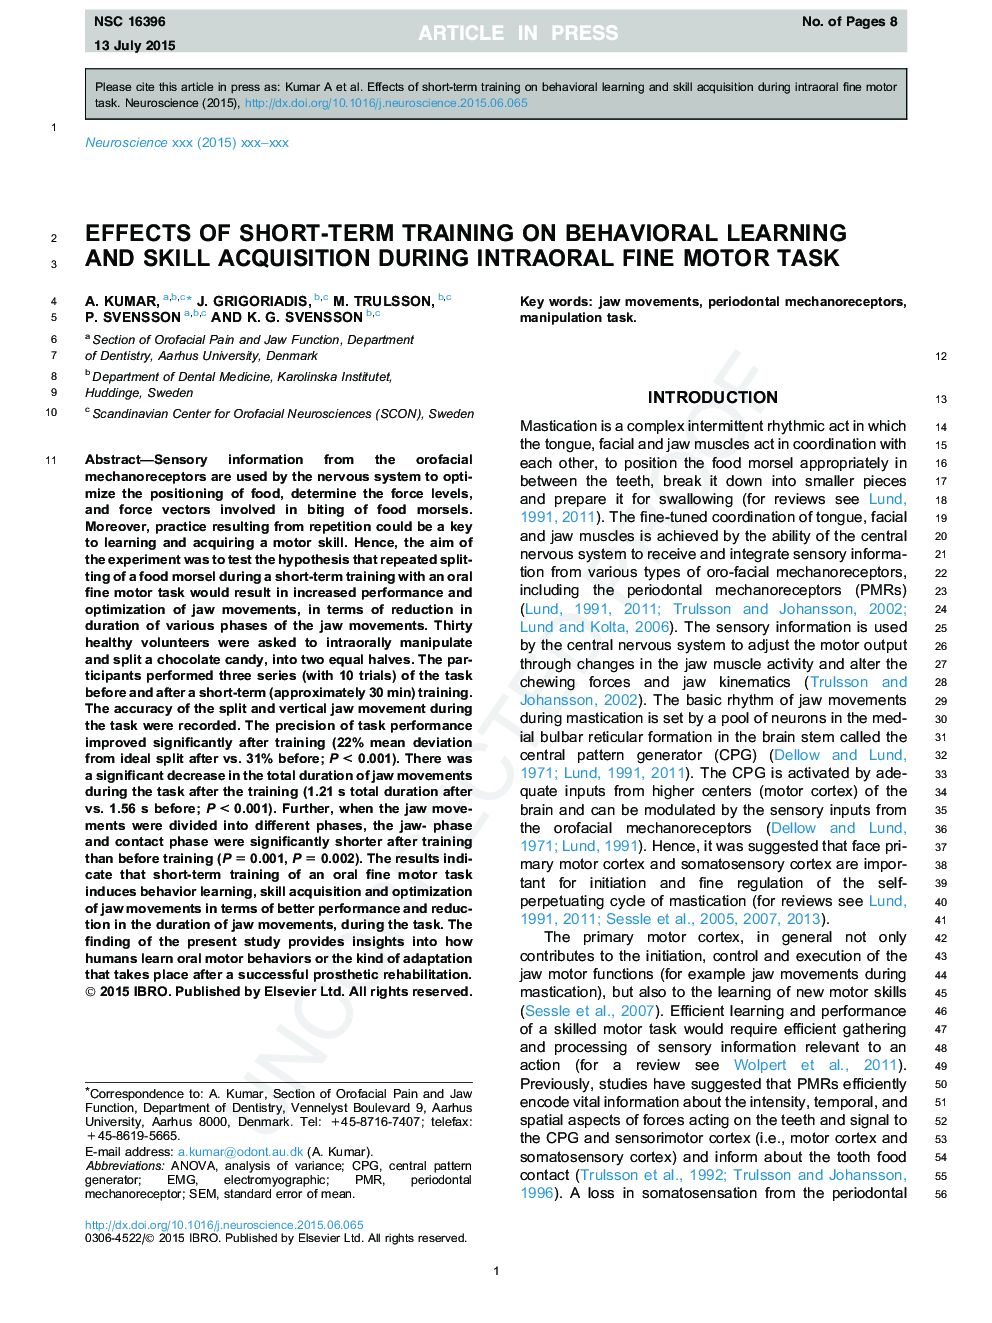 تأثیر آموزش کوتاه مدت در یادگیری رفتاری و کسب مهارت در طی وظیفه حرکتی درون مفصلی 